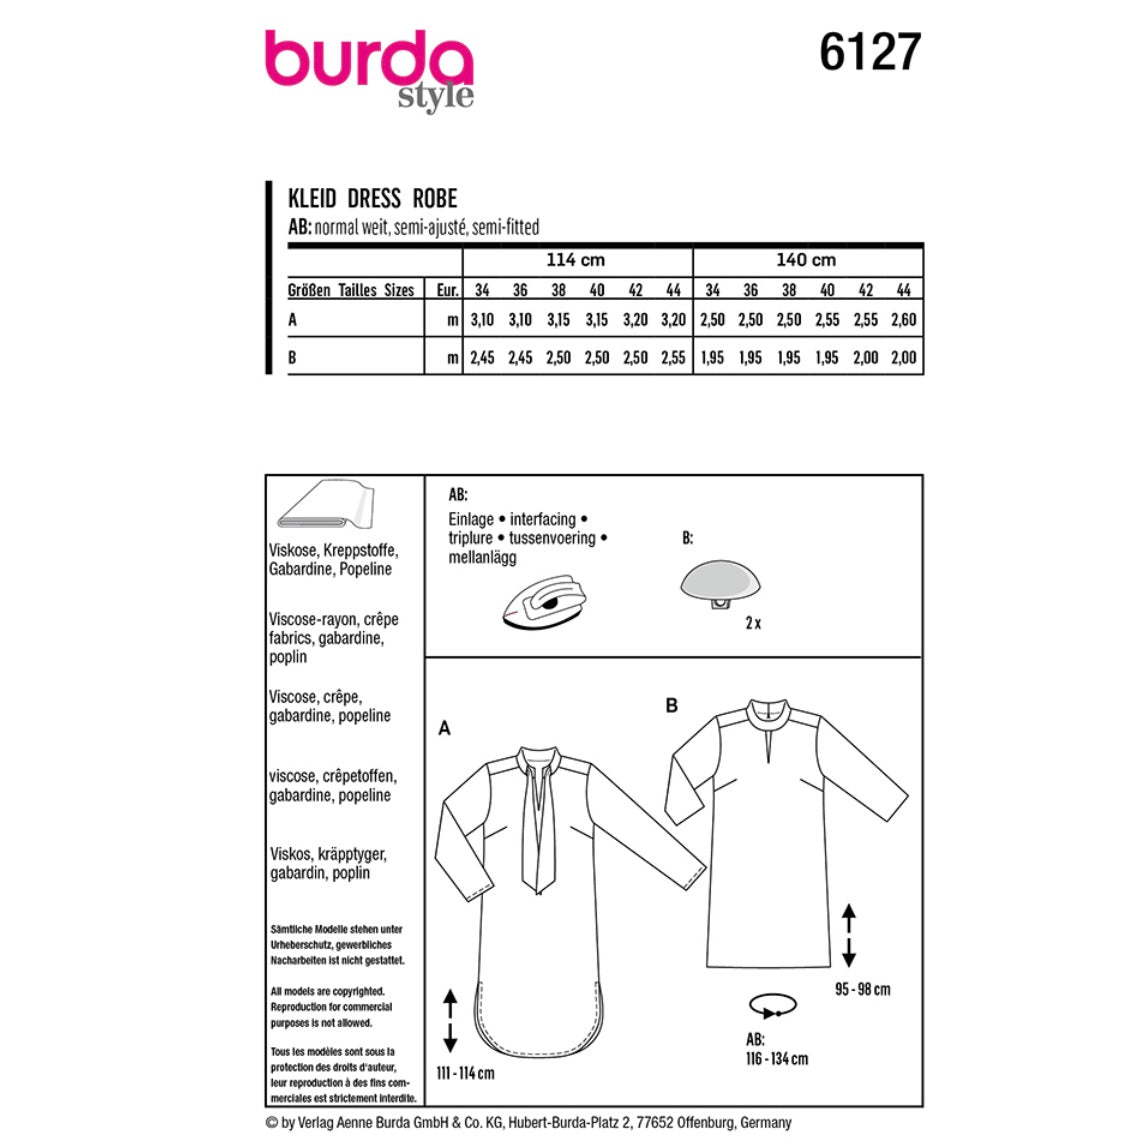 Dress Sewing Pattern - Burda Style 6127